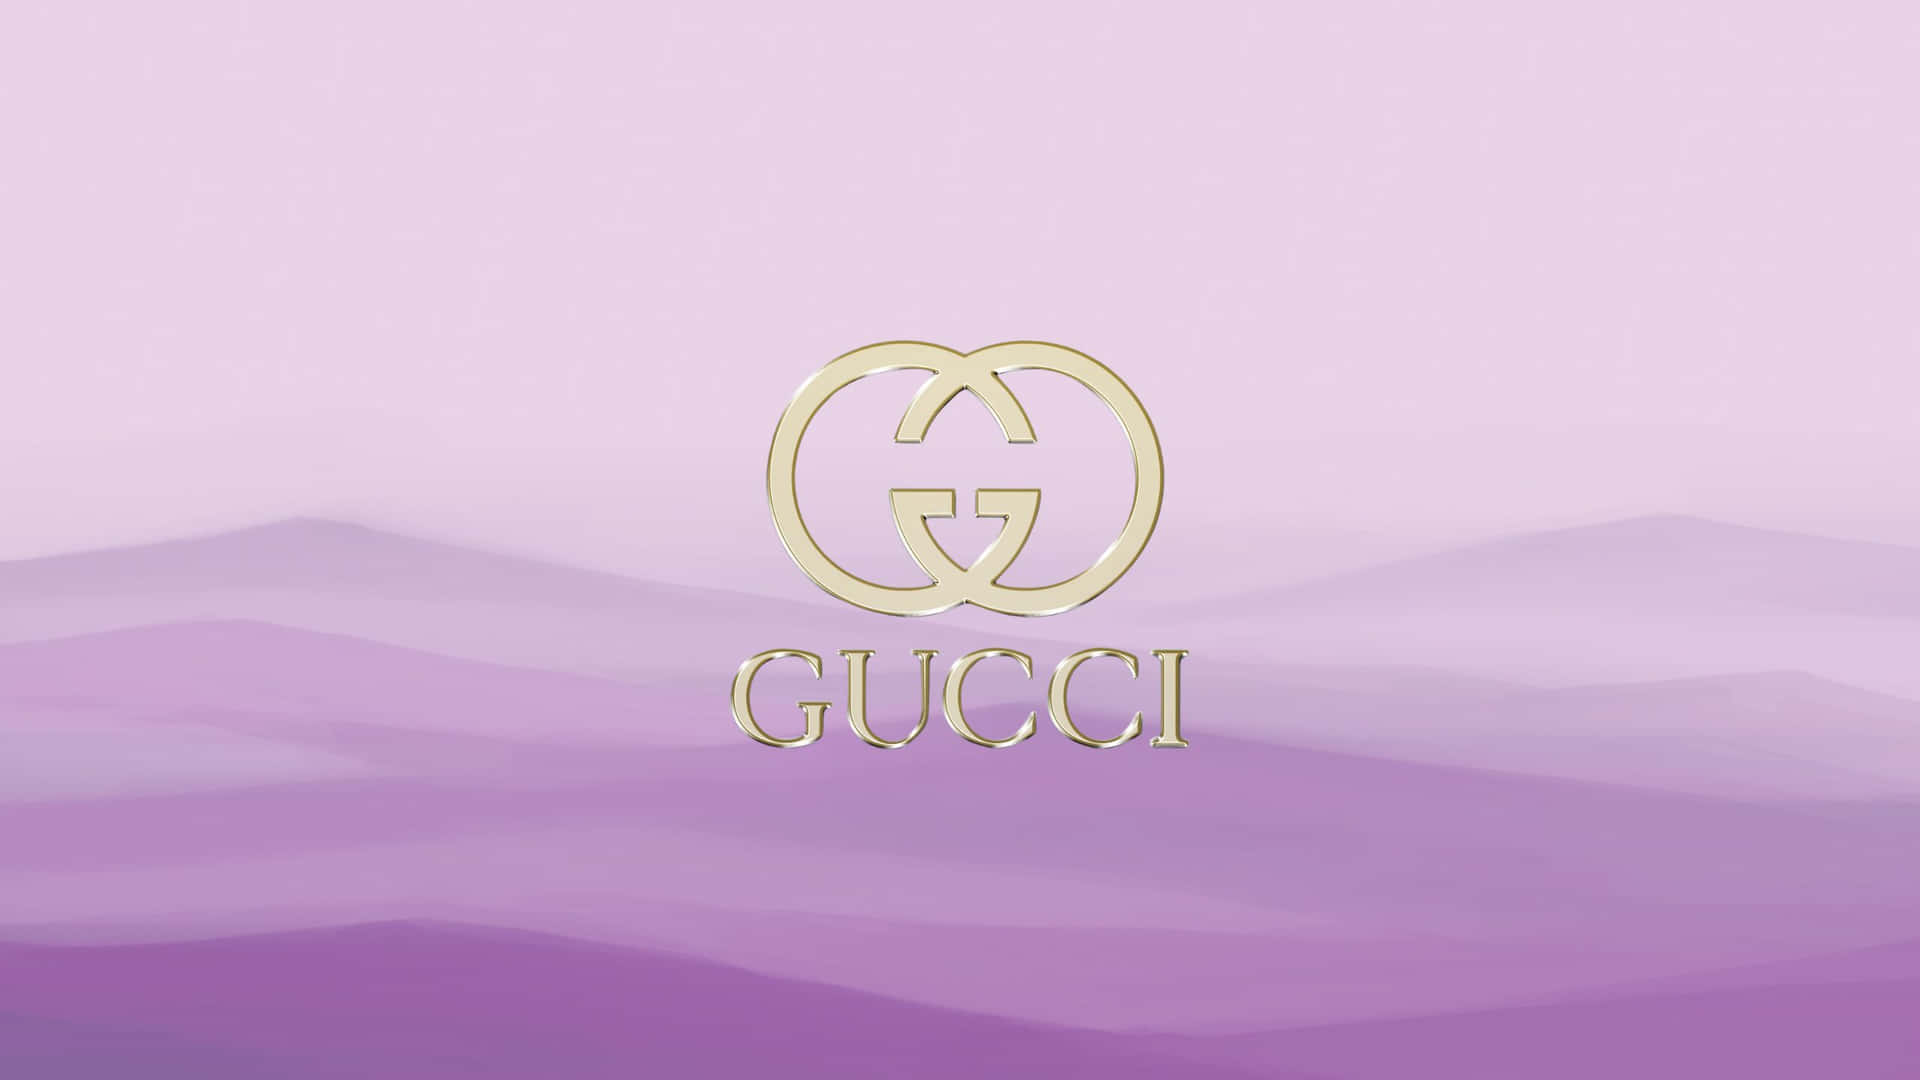 Lilla Gucci 2560 X 1440 Wallpaper